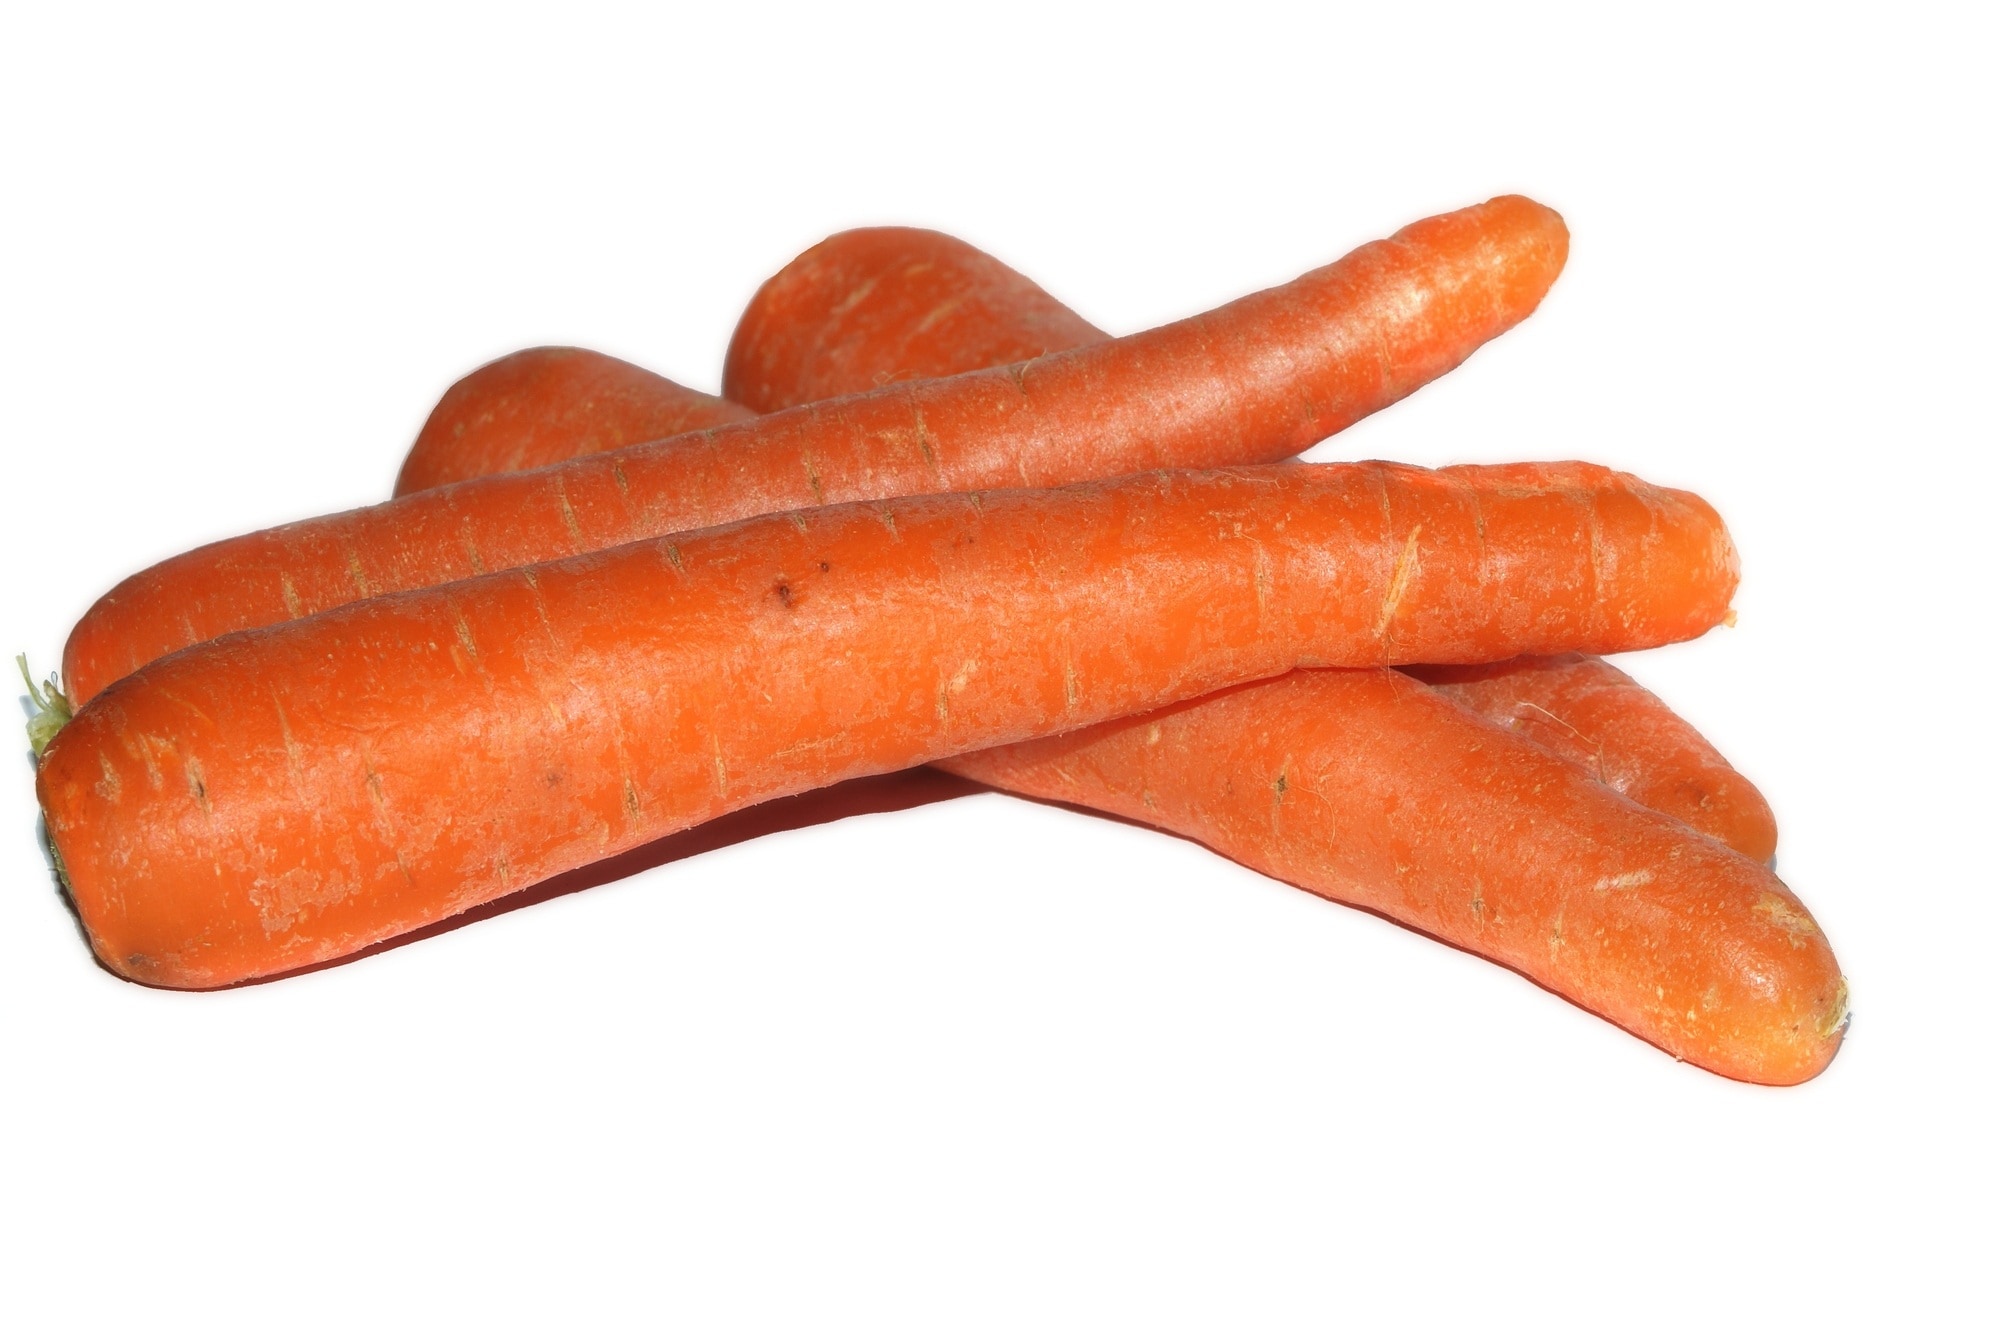 4 orange carrots